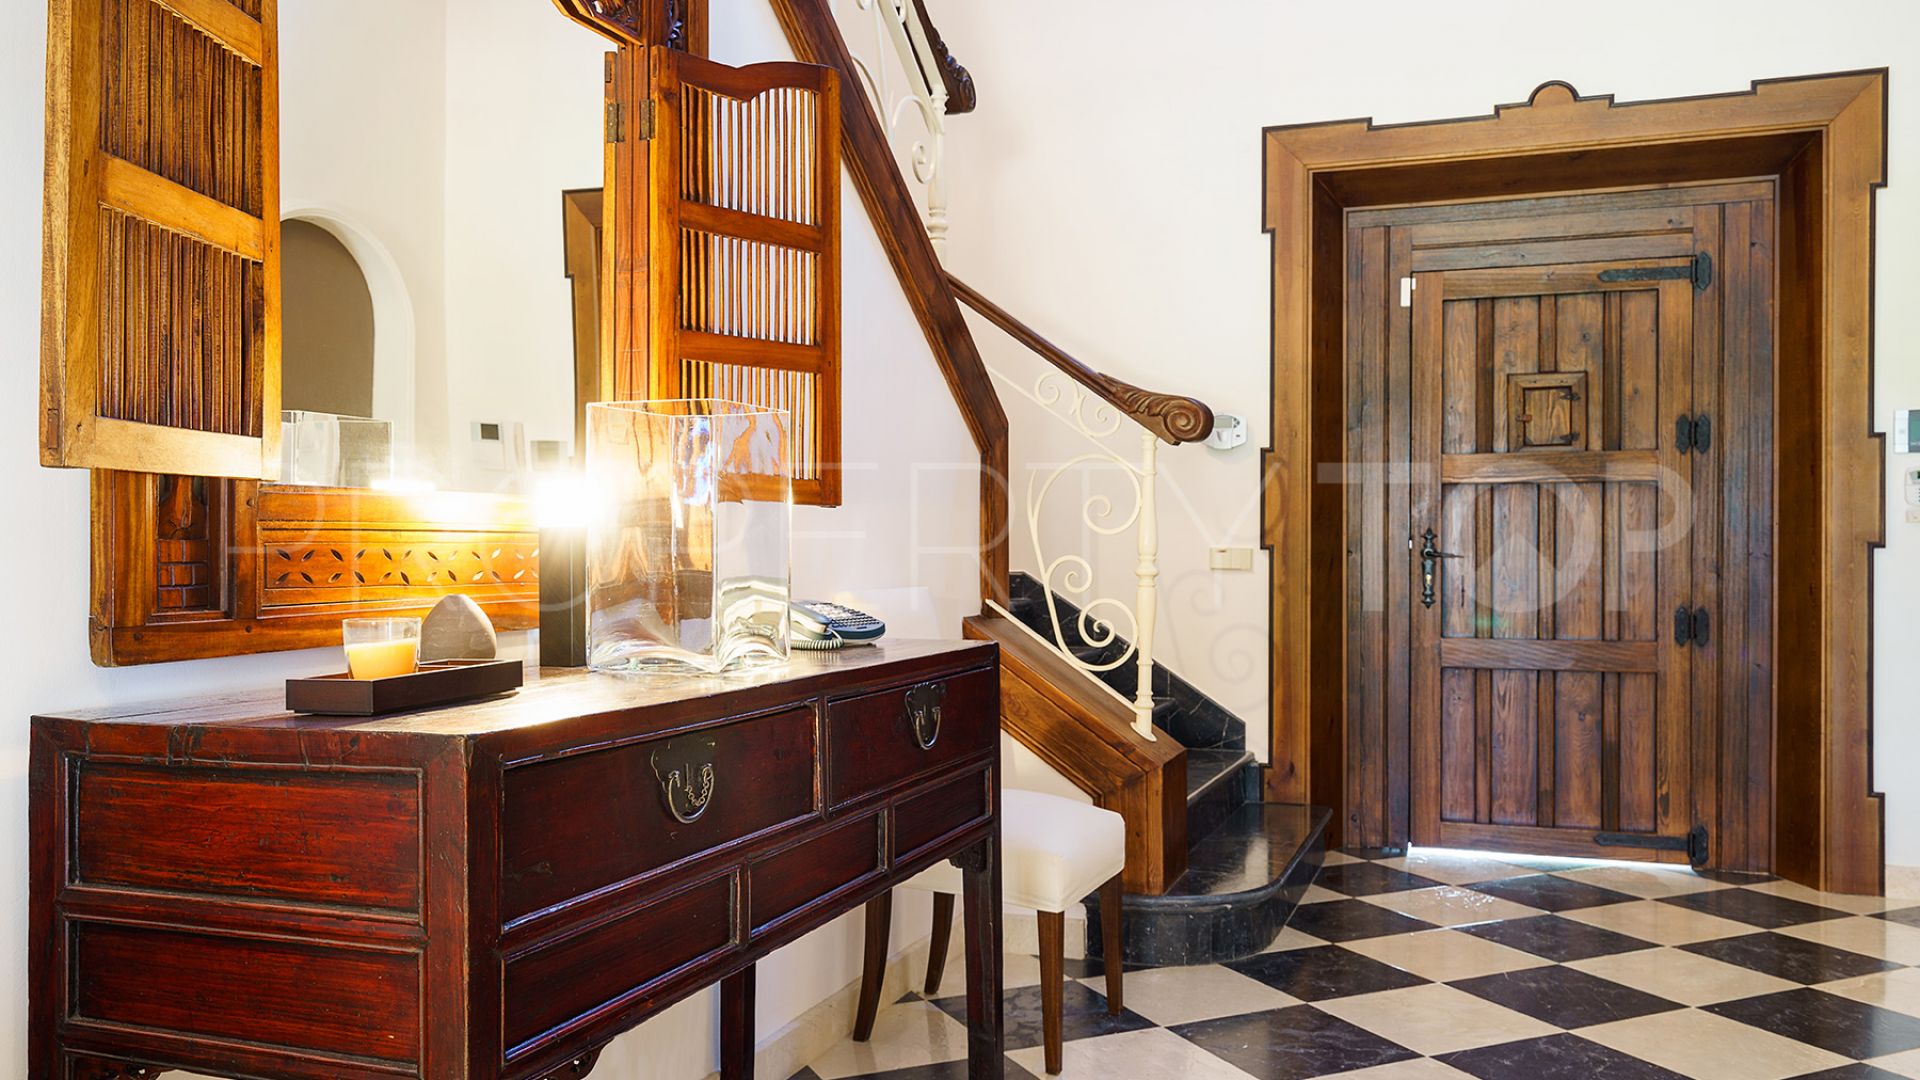 Buy villa with 5 bedrooms in La Alqueria